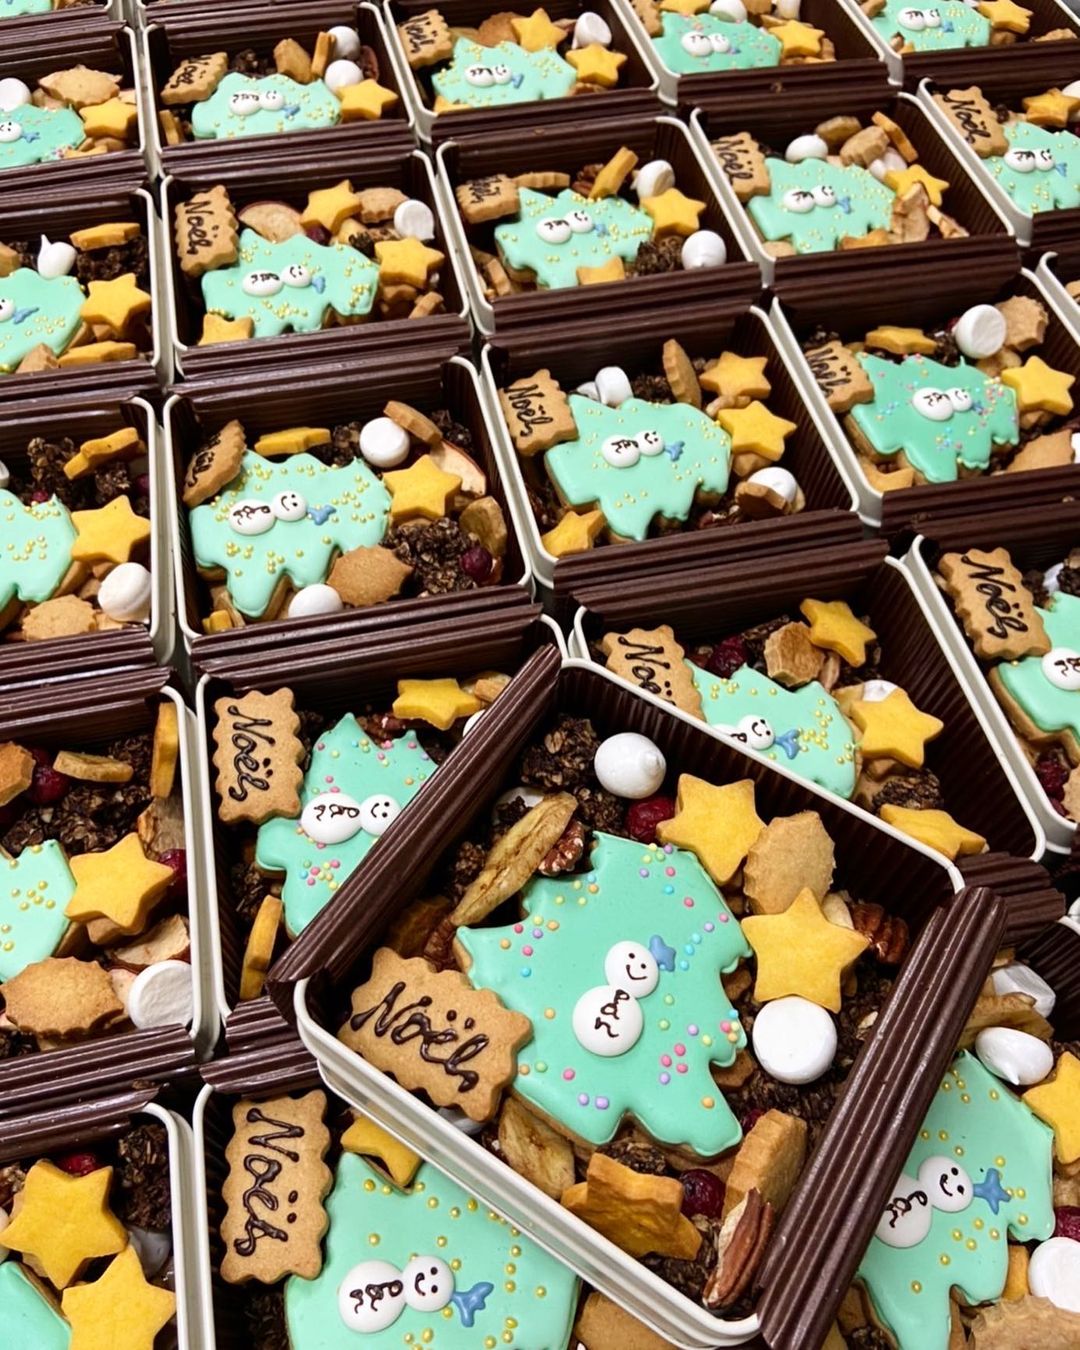 オパンのクリスマスクッキー缶 本日から再販させていただきます 21 12 01 Opan オパン 東京 笹塚のパン屋